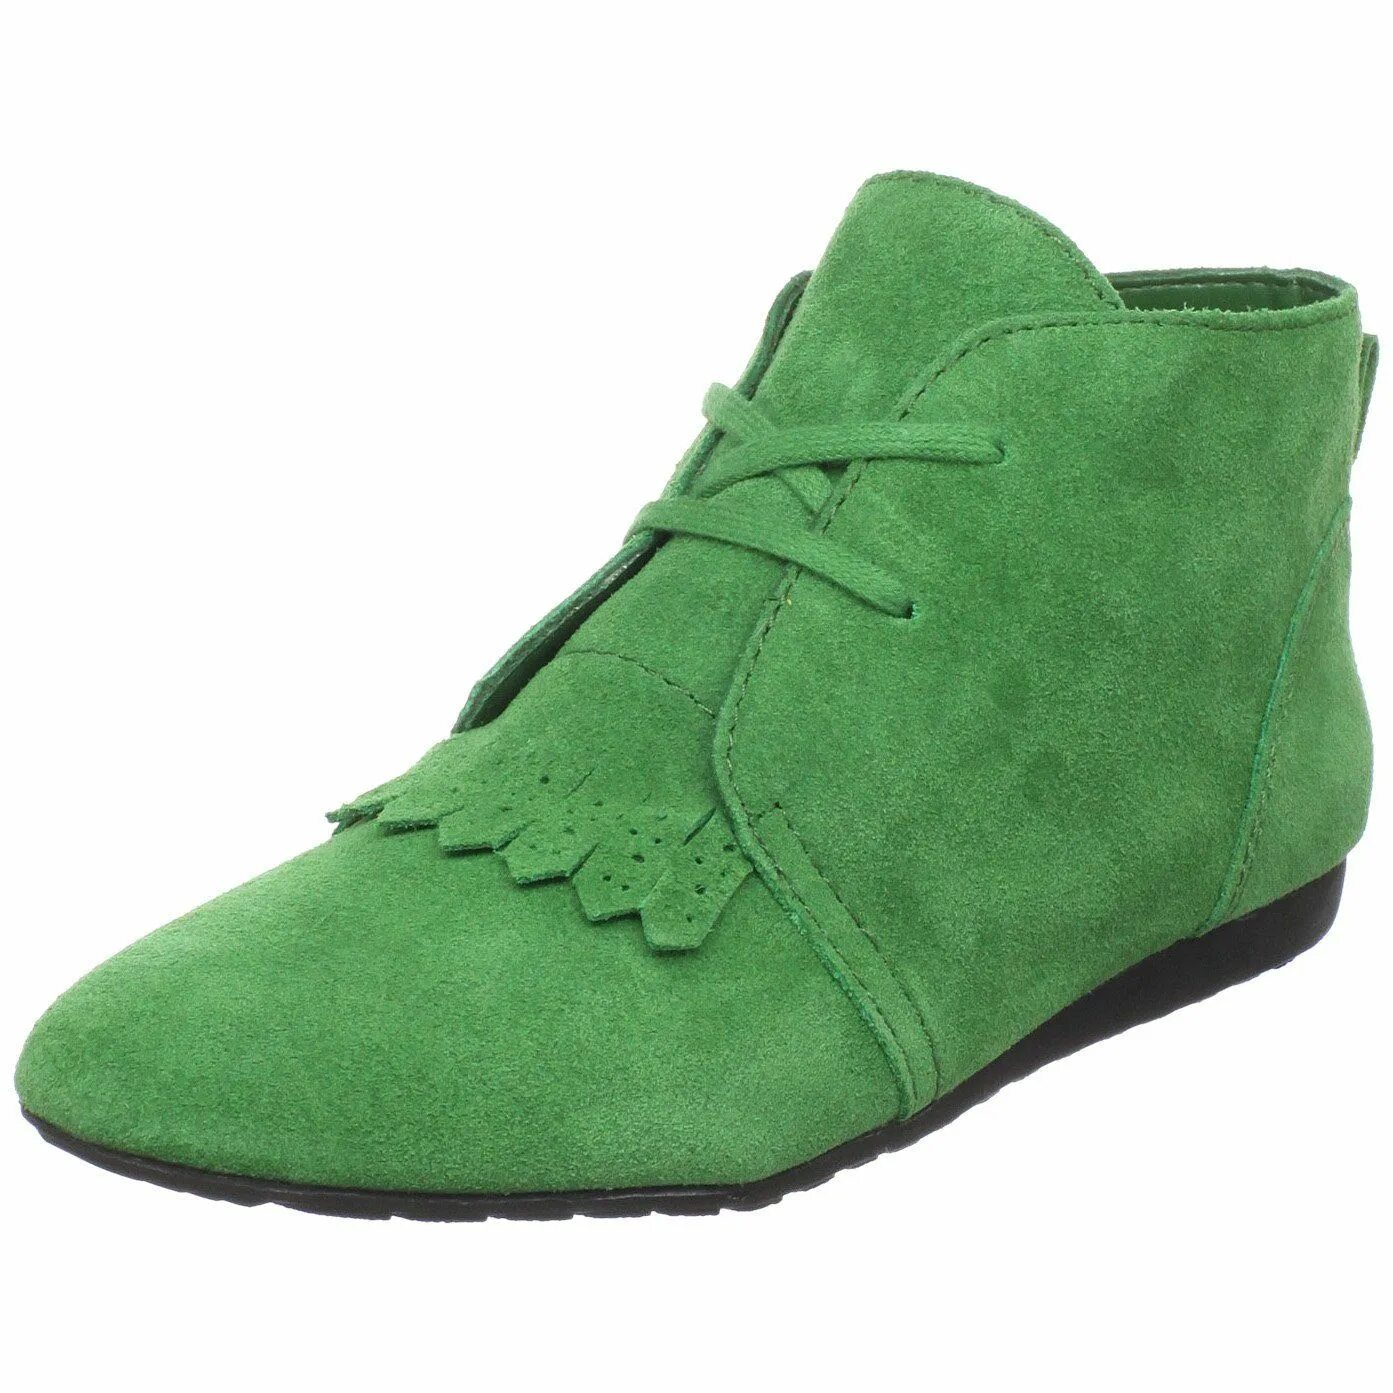 Обувь green. Зелёные ботинки. Зеленые полуботинки. Обувь зеленого цвета. Полуботинки зеленые женские.